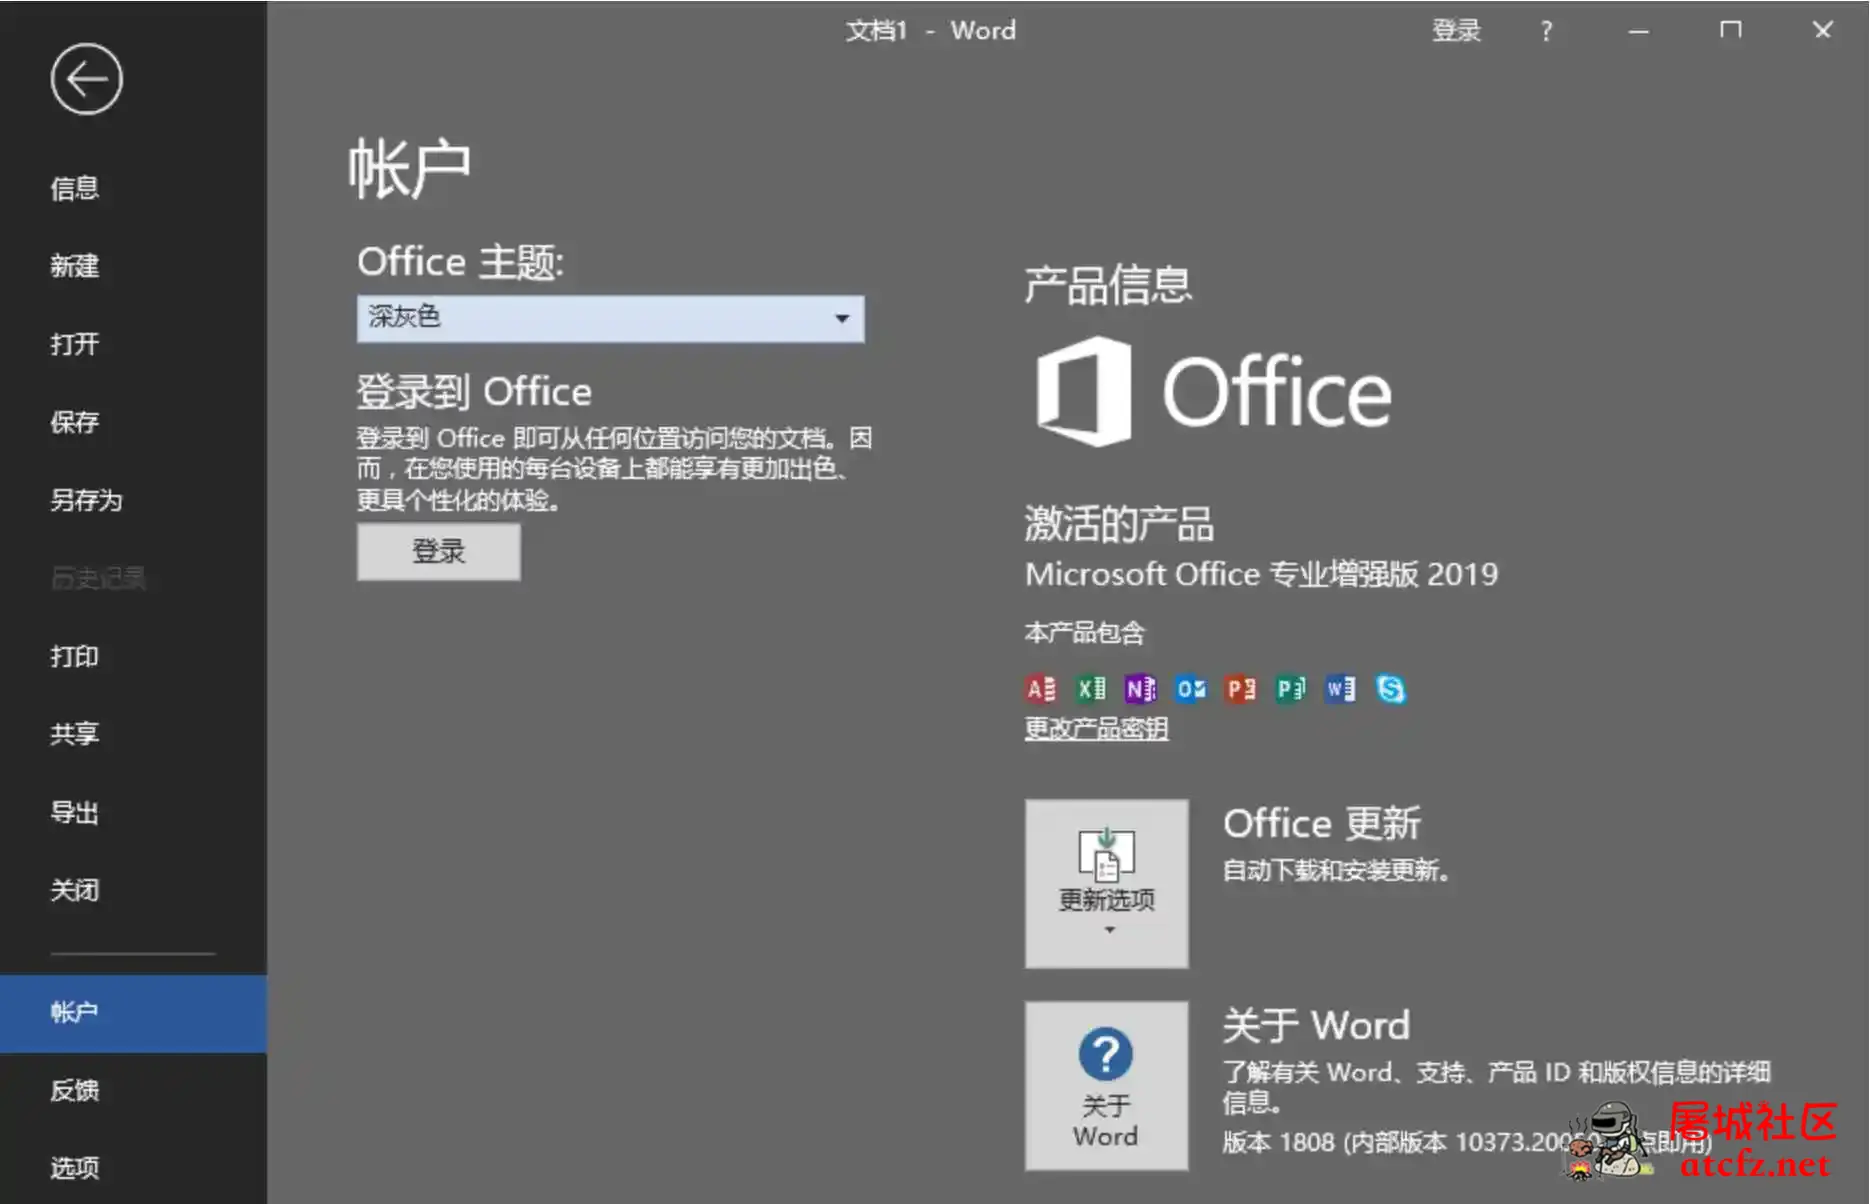 微软Office2019批量授权版批量授权商业版工具 屠城辅助网www.tcfz1.com8805